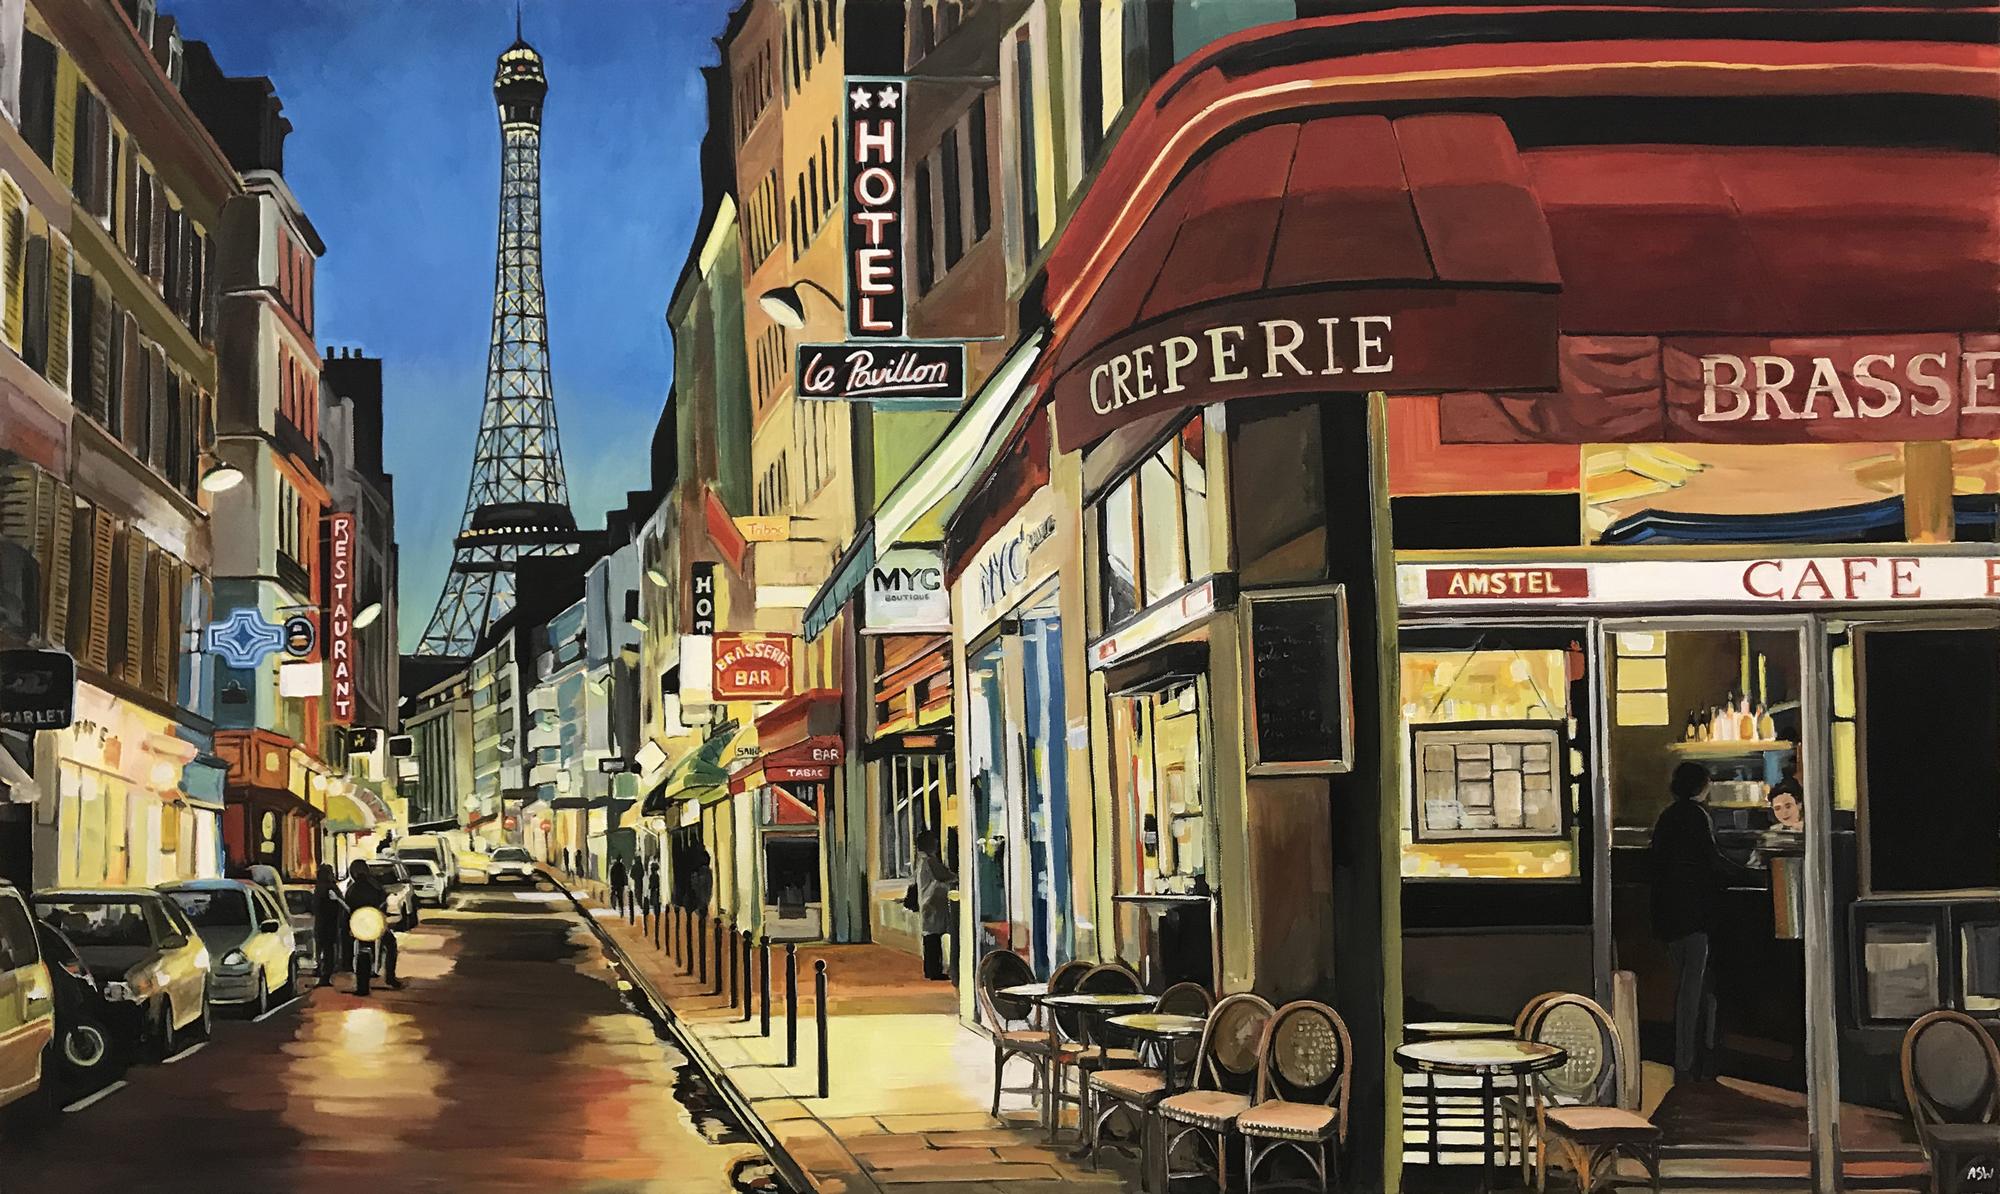 Paris Café mit Eiffelturm Frankreich Limited Edition Druck von figurativen Stadtbild Malerei von führenden britischen Urban Landscape Artist, Angela Wakefield. 

Der Druck misst 16 x 9,5 Zoll 
Papiergewicht Schwer 250gsm
Papiertyp Perlino Baumwolle